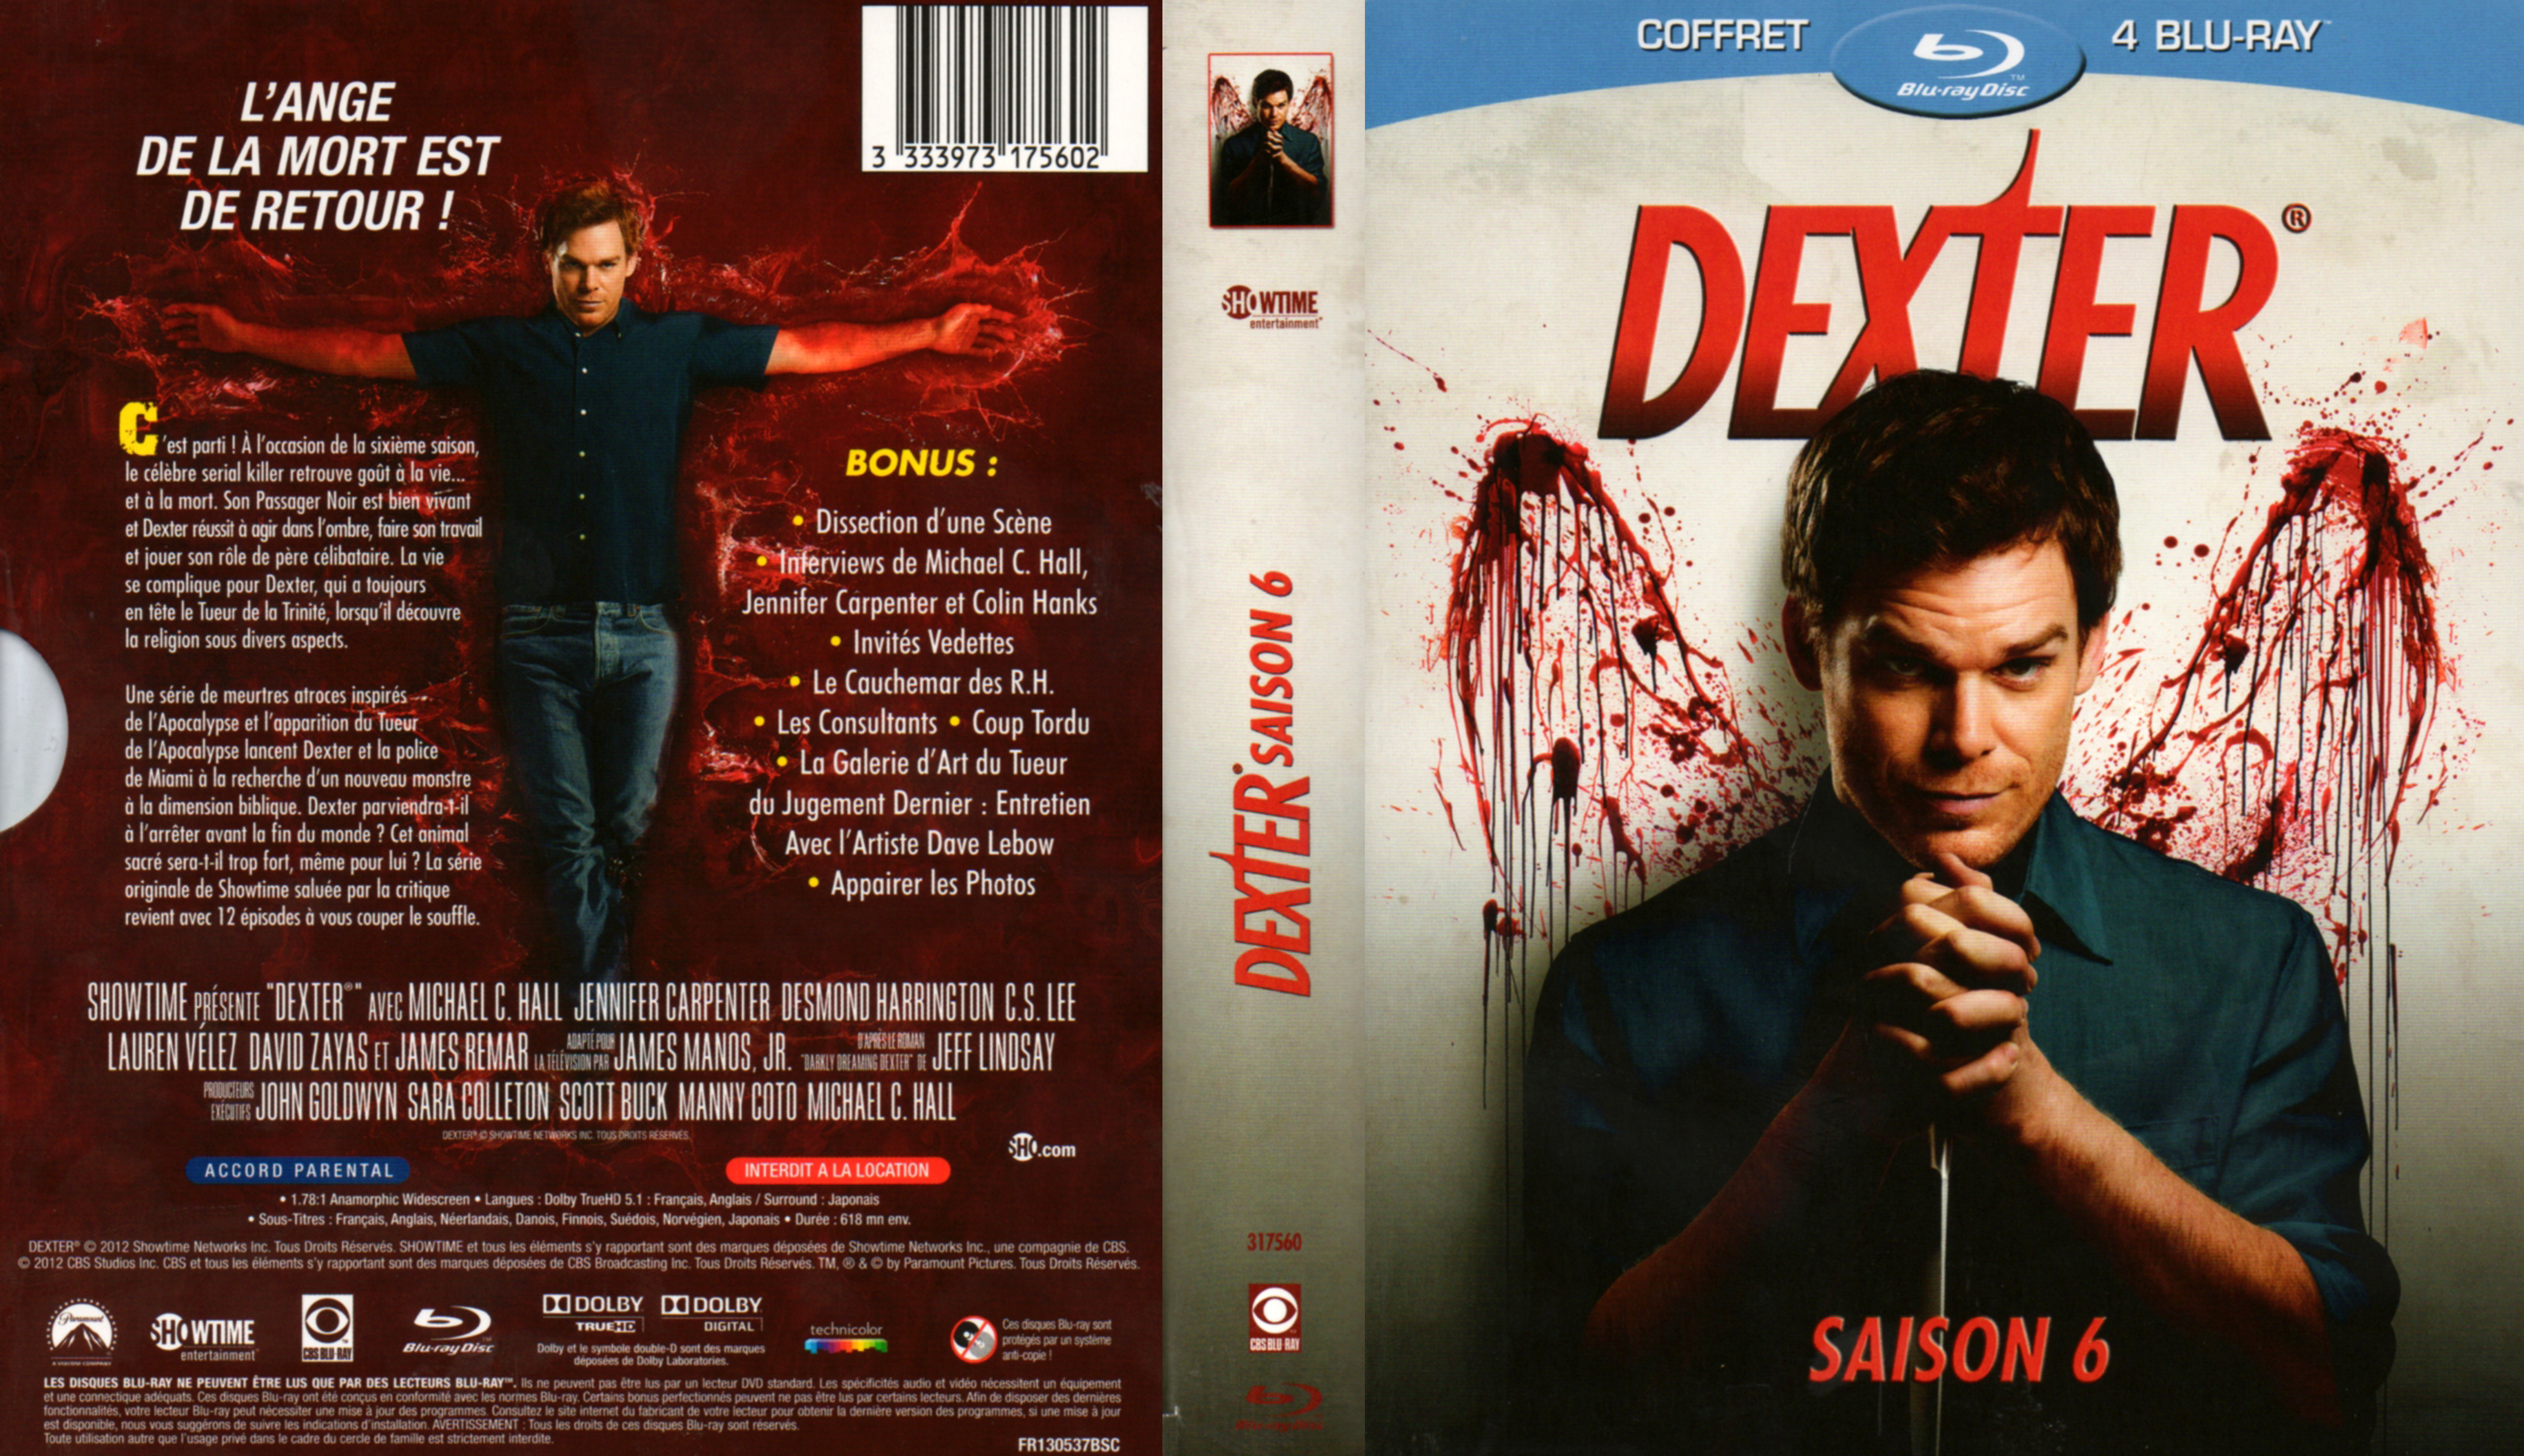 Jaquette DVD Dexter saison 6 COFFRET (BLU-RAY)